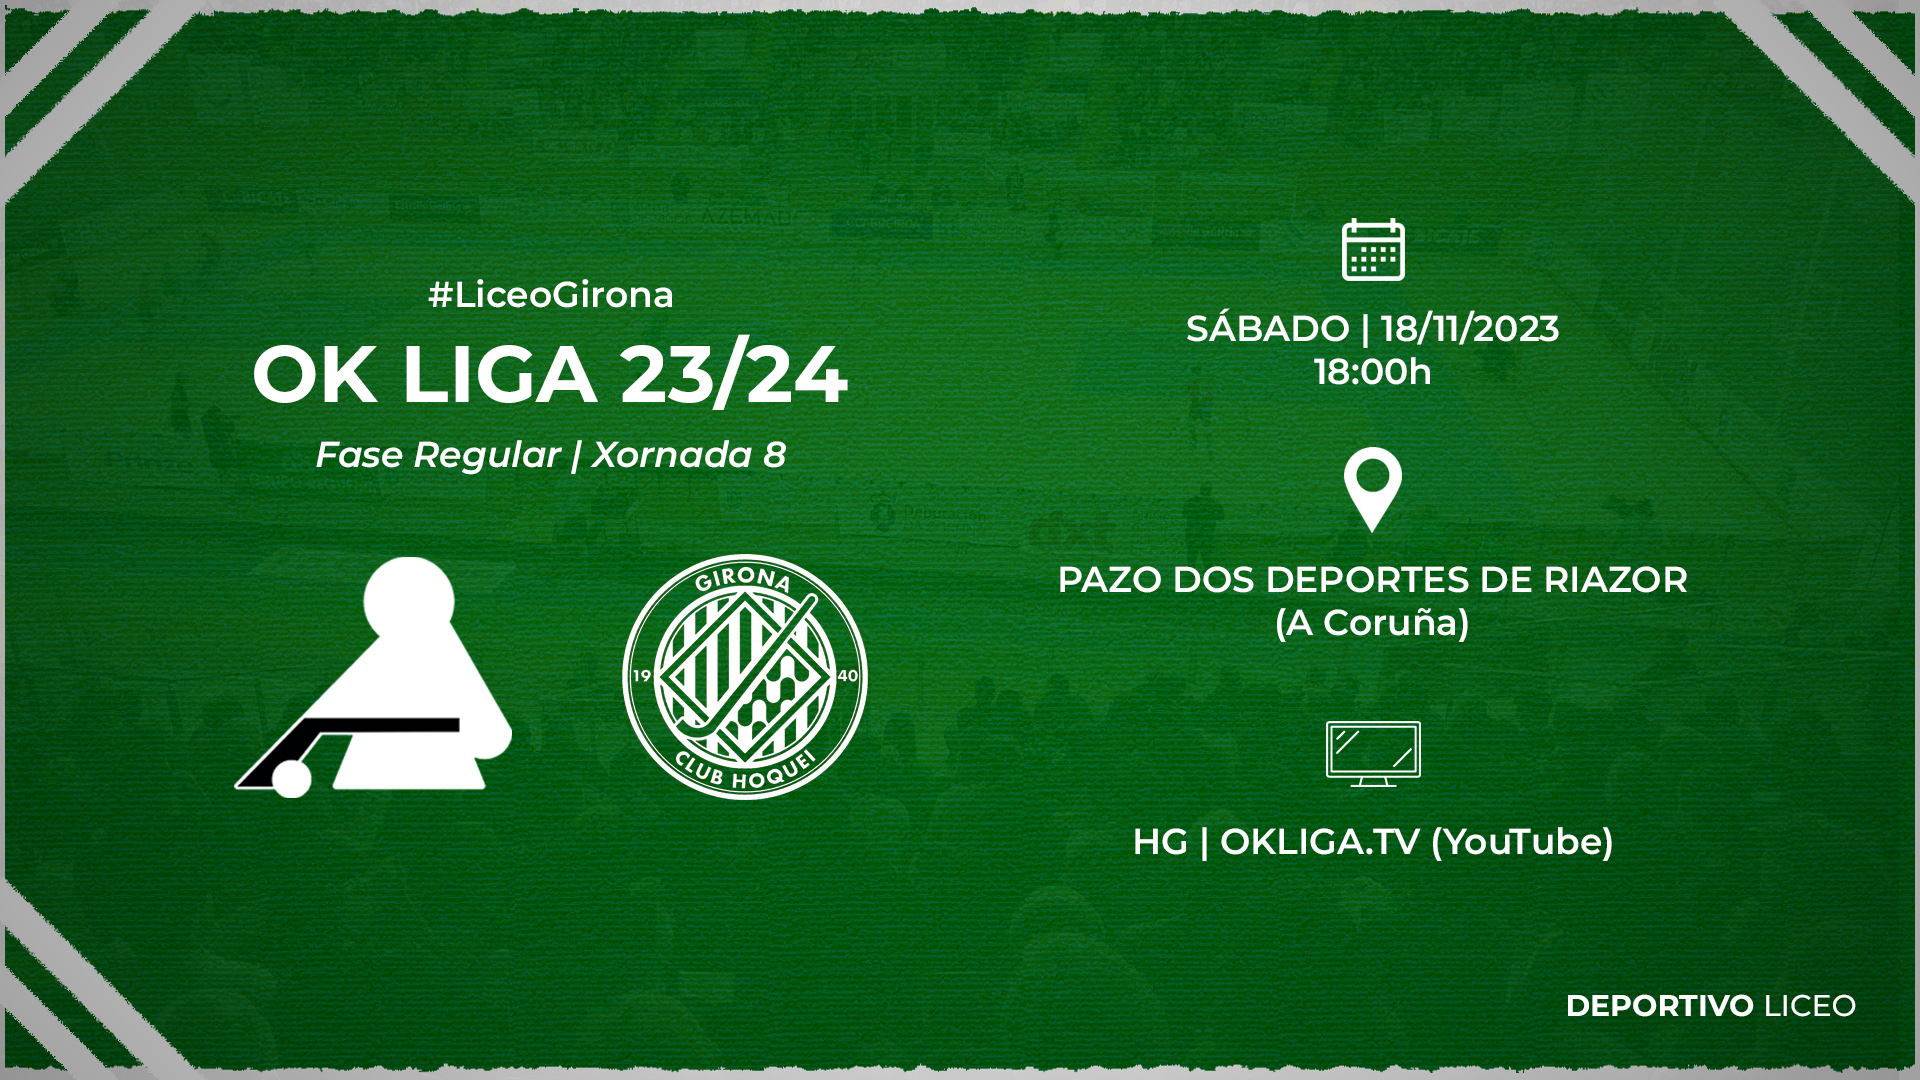 #LiceoGirona | ENTRADAS para a xornada 8 da OK Liga 23/24